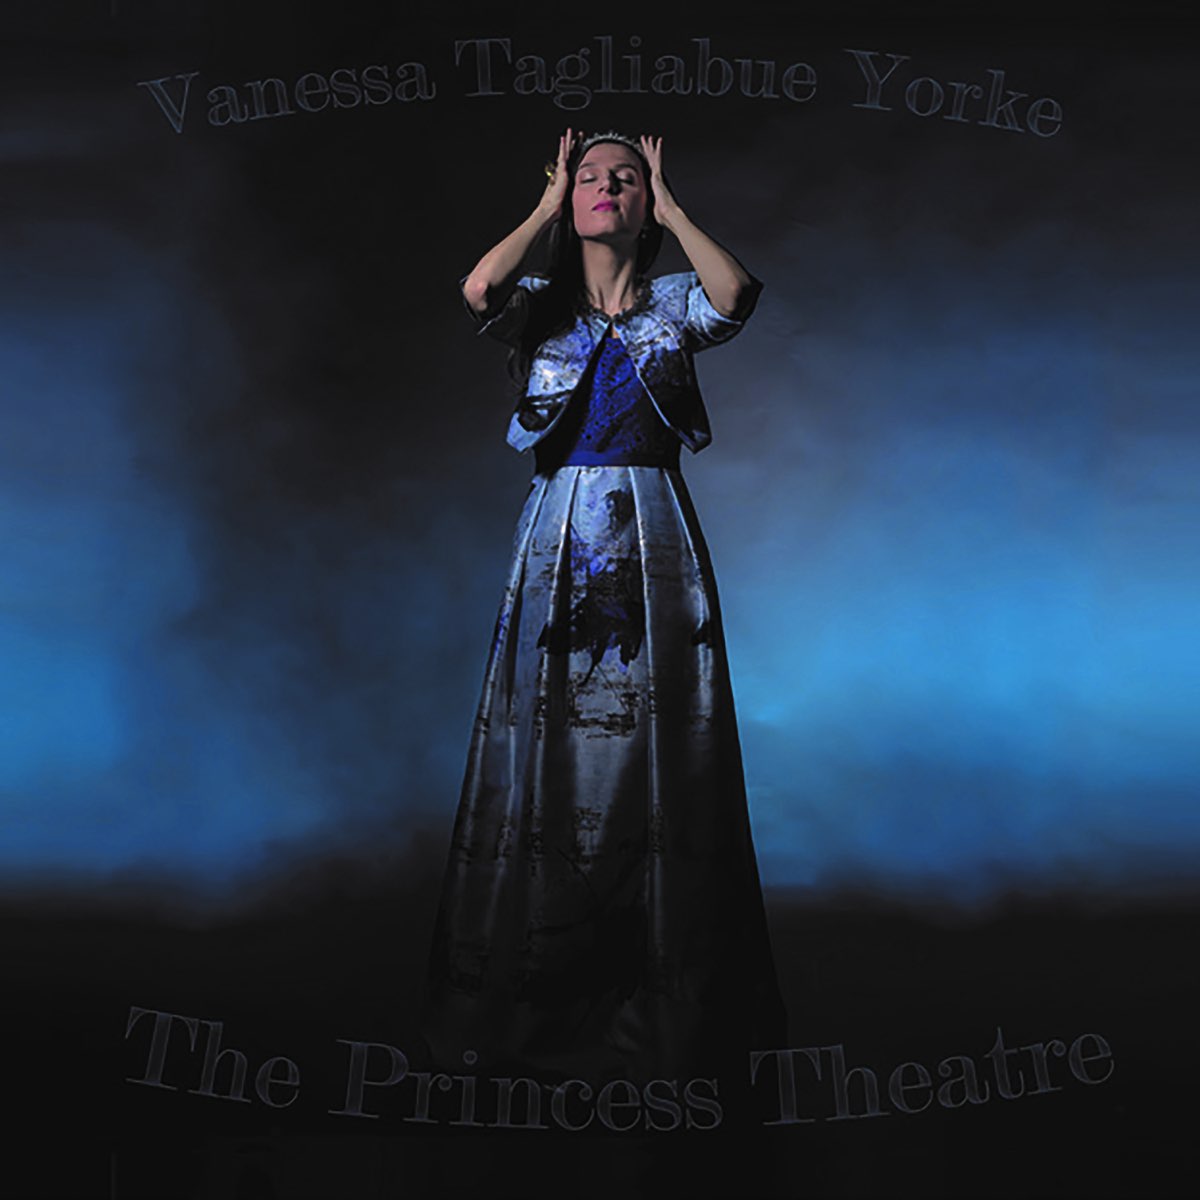 Vanessa Tagliabue Yorke - The Princess Theatre